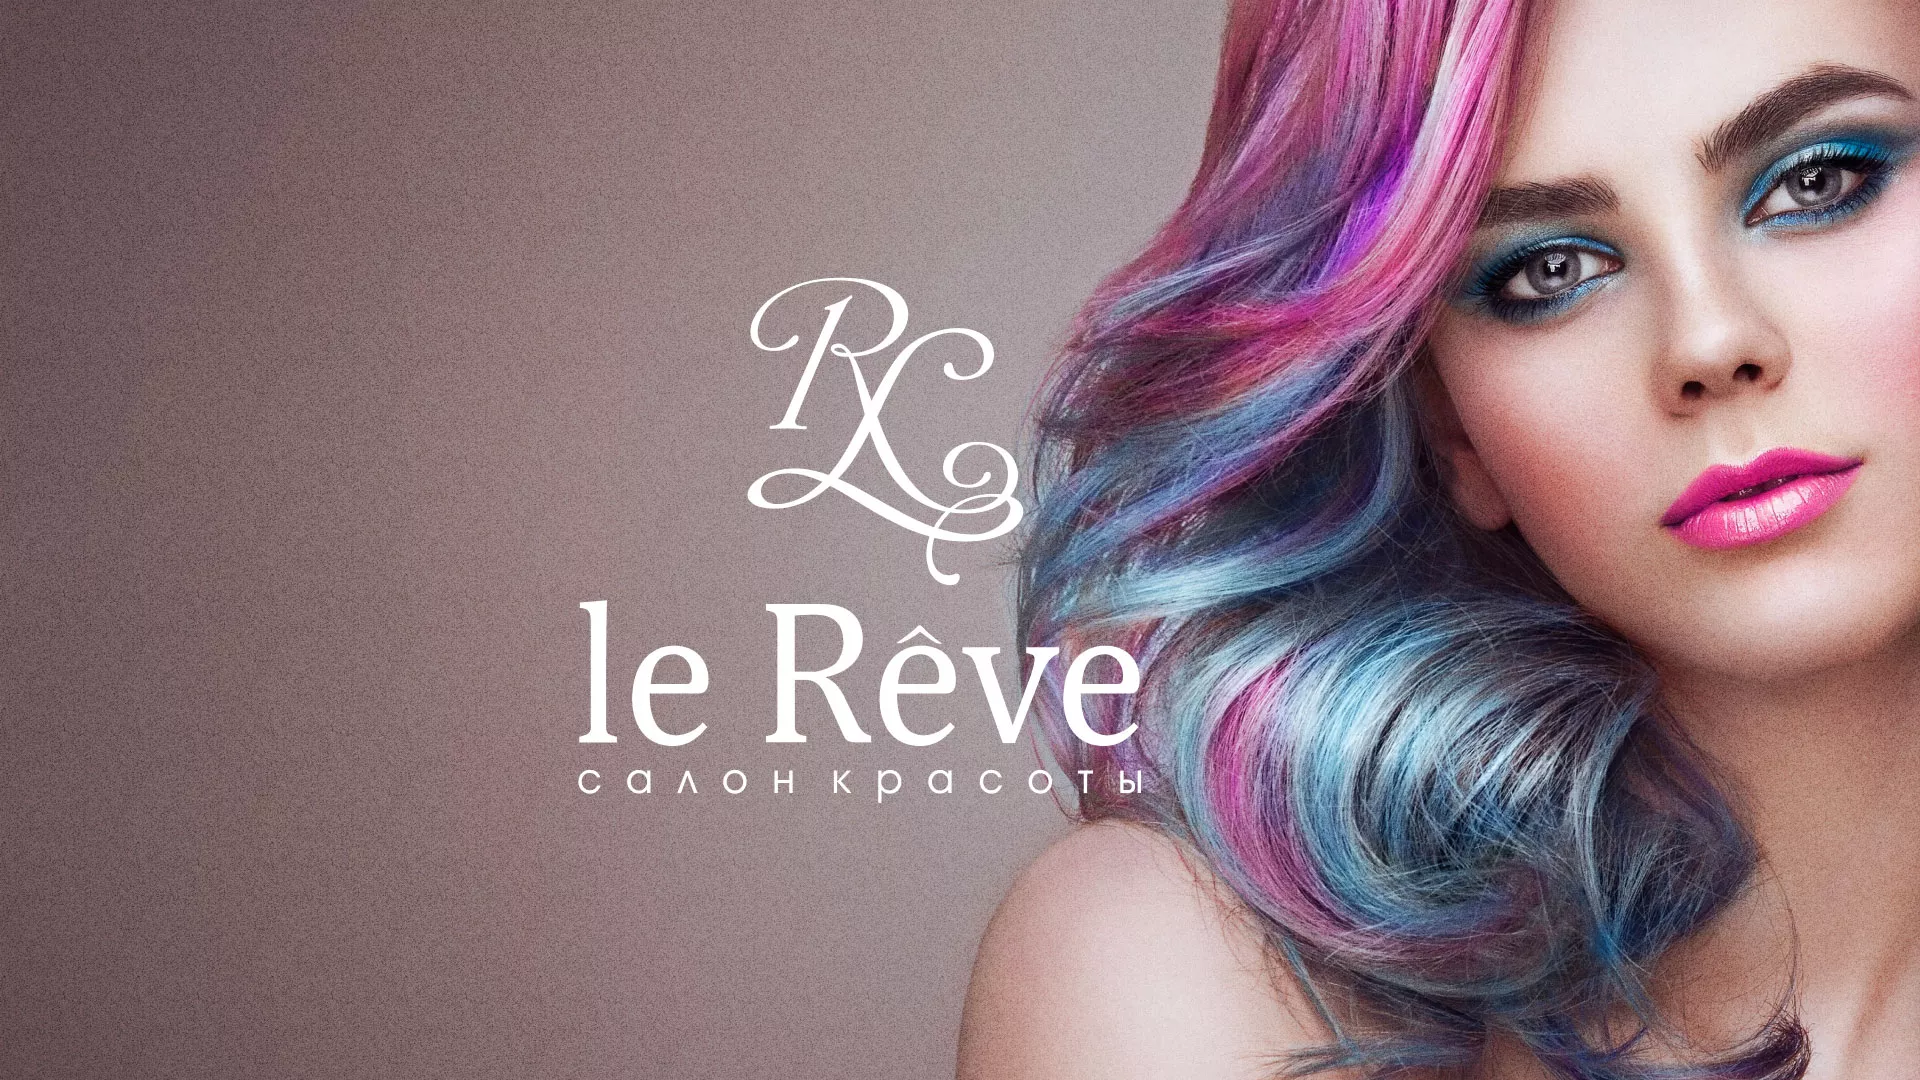 Создание сайта для салона красоты «Le Reve» в Зее